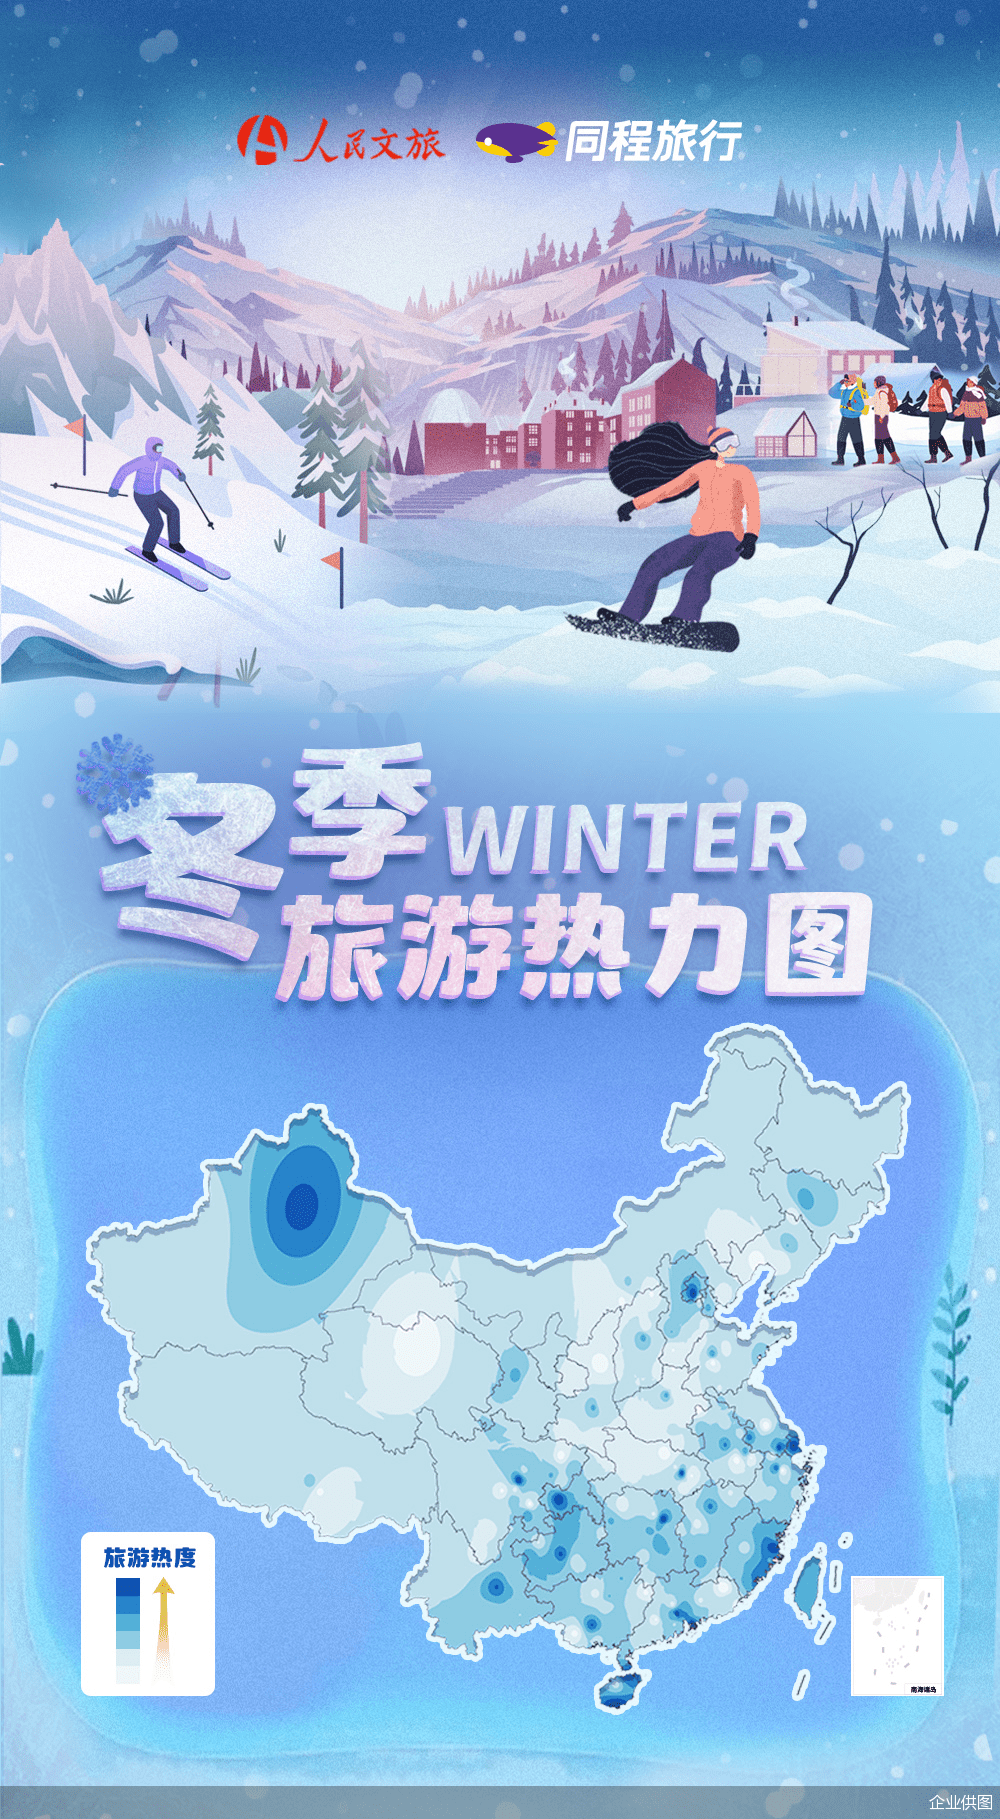 滑雪场|同程旅行联合人民文旅发布“冬季旅游热力图”，冰雪、温泉、海岛成三大出行主题